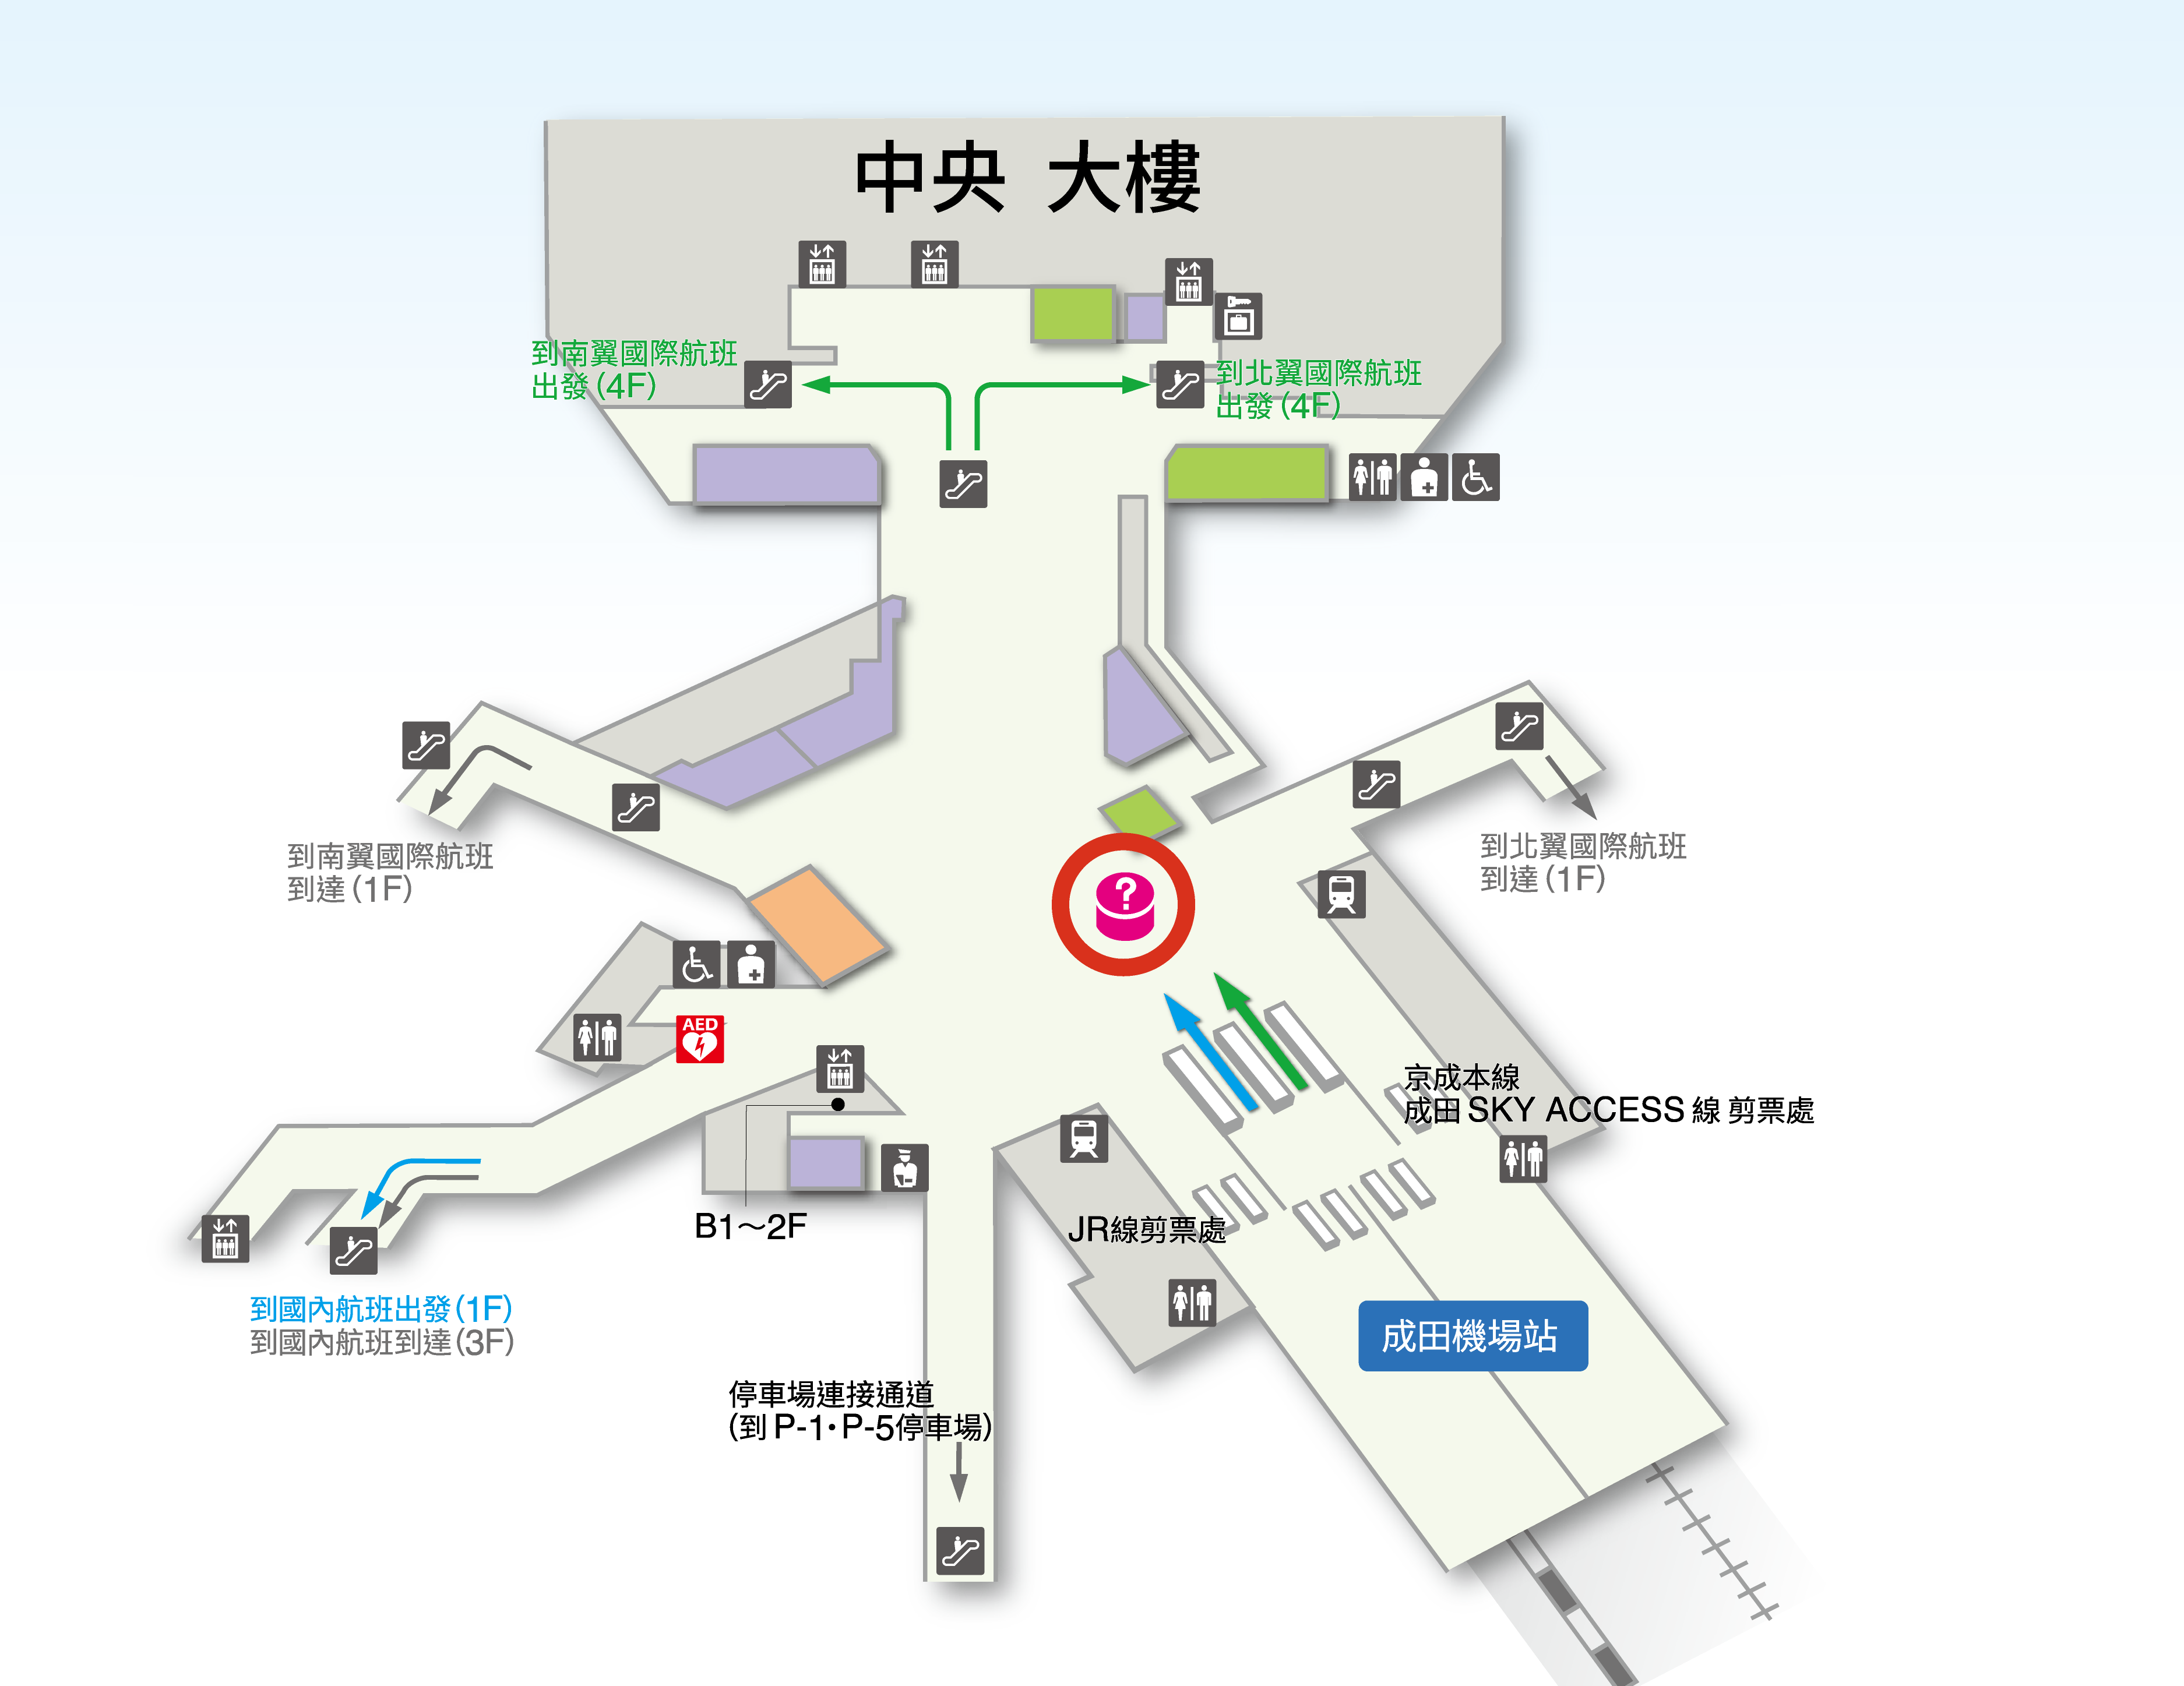 第1候機樓 B1F 鐵路車站 樓層地圖圖示